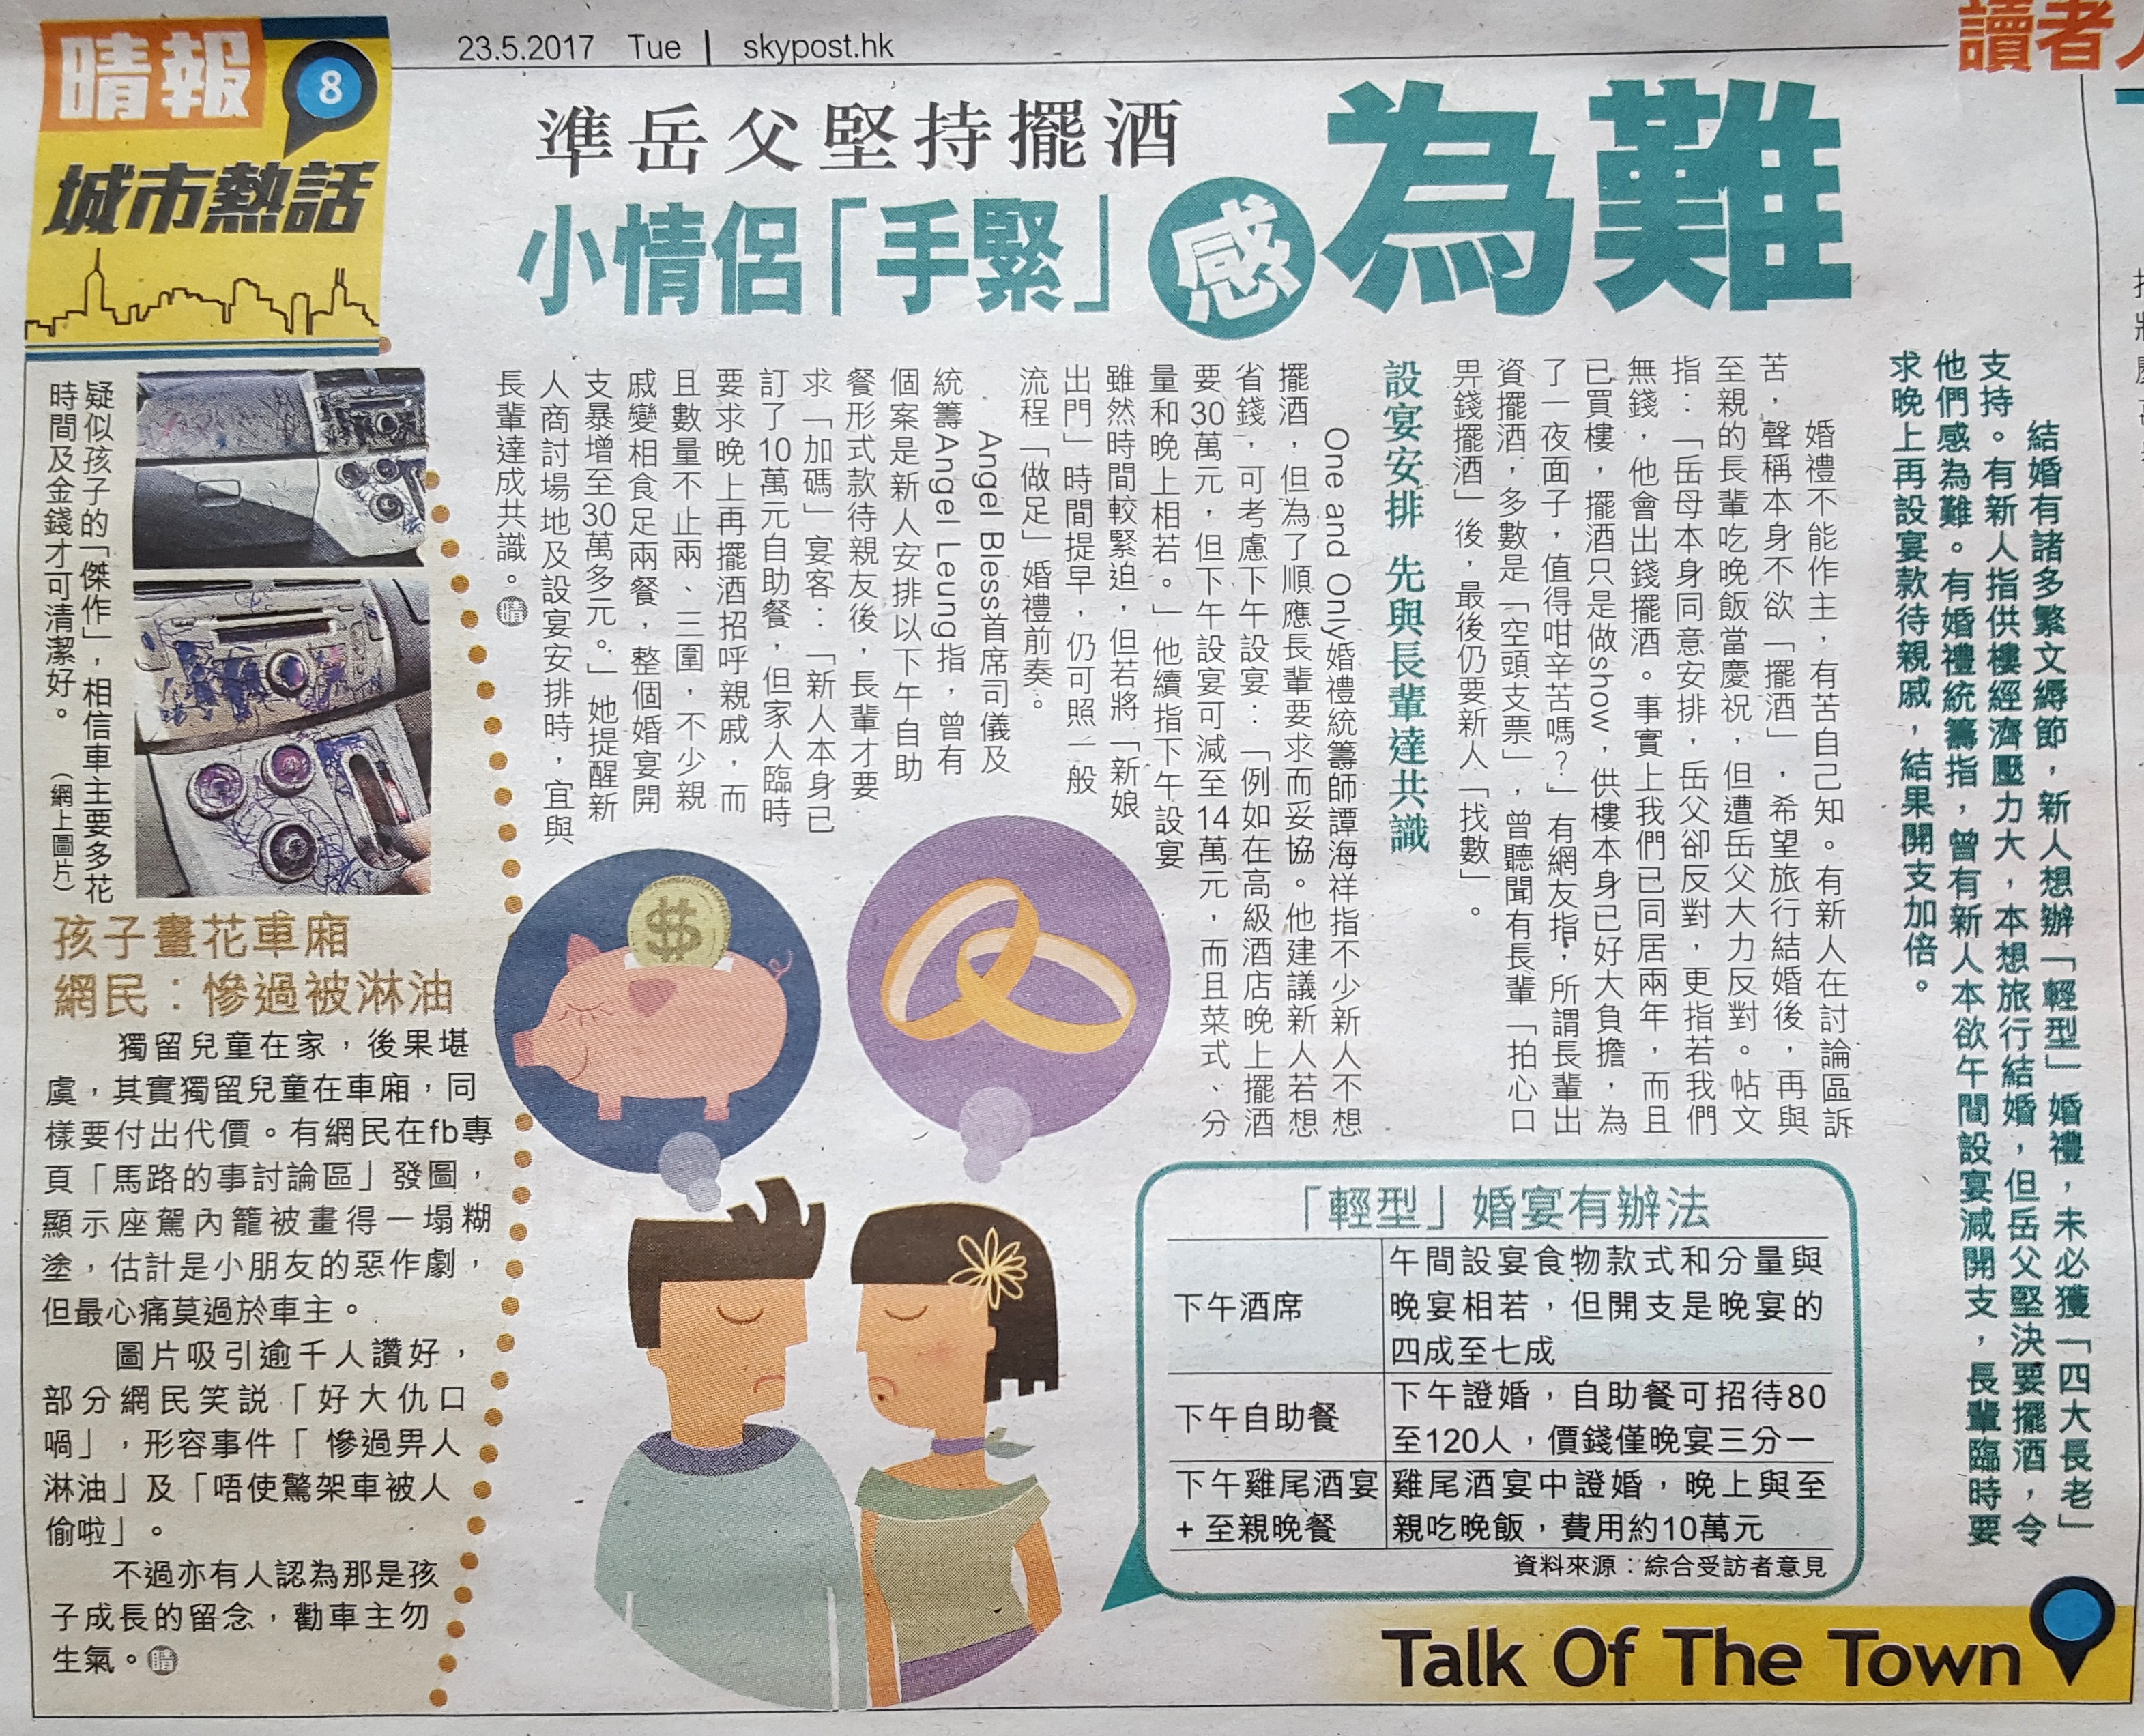 司儀主持人MC Angel Leung之媒體報導: 準岳父堅持擺酒 小情侶手緊感為難